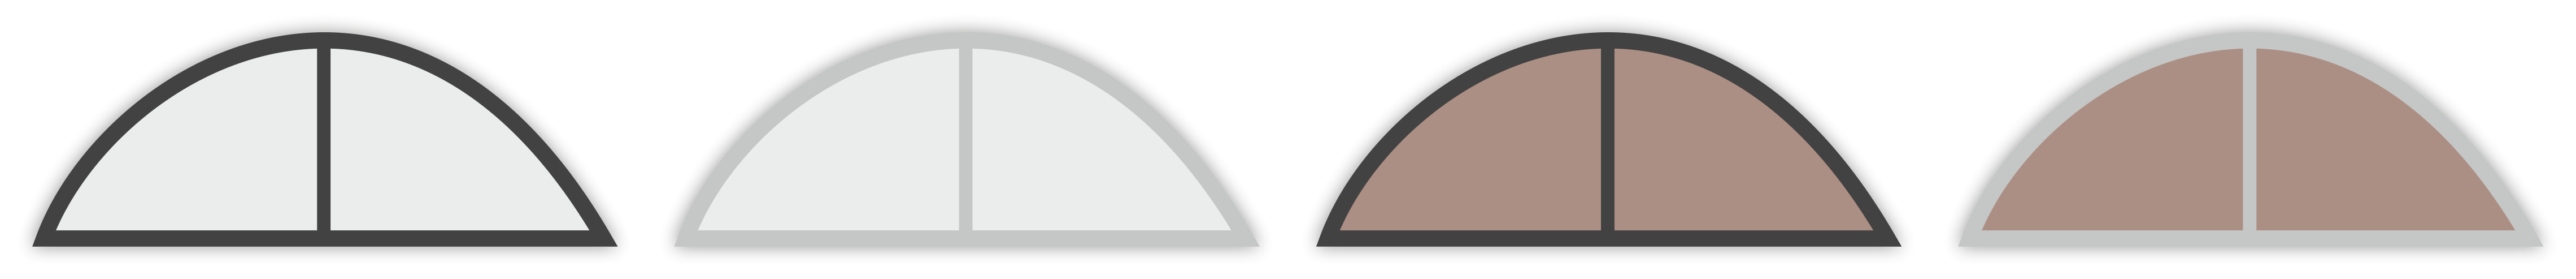 Barvy polykarbonátu (čirý, kouřový bronz, plný) a barva konstrukce (antracit, elox)